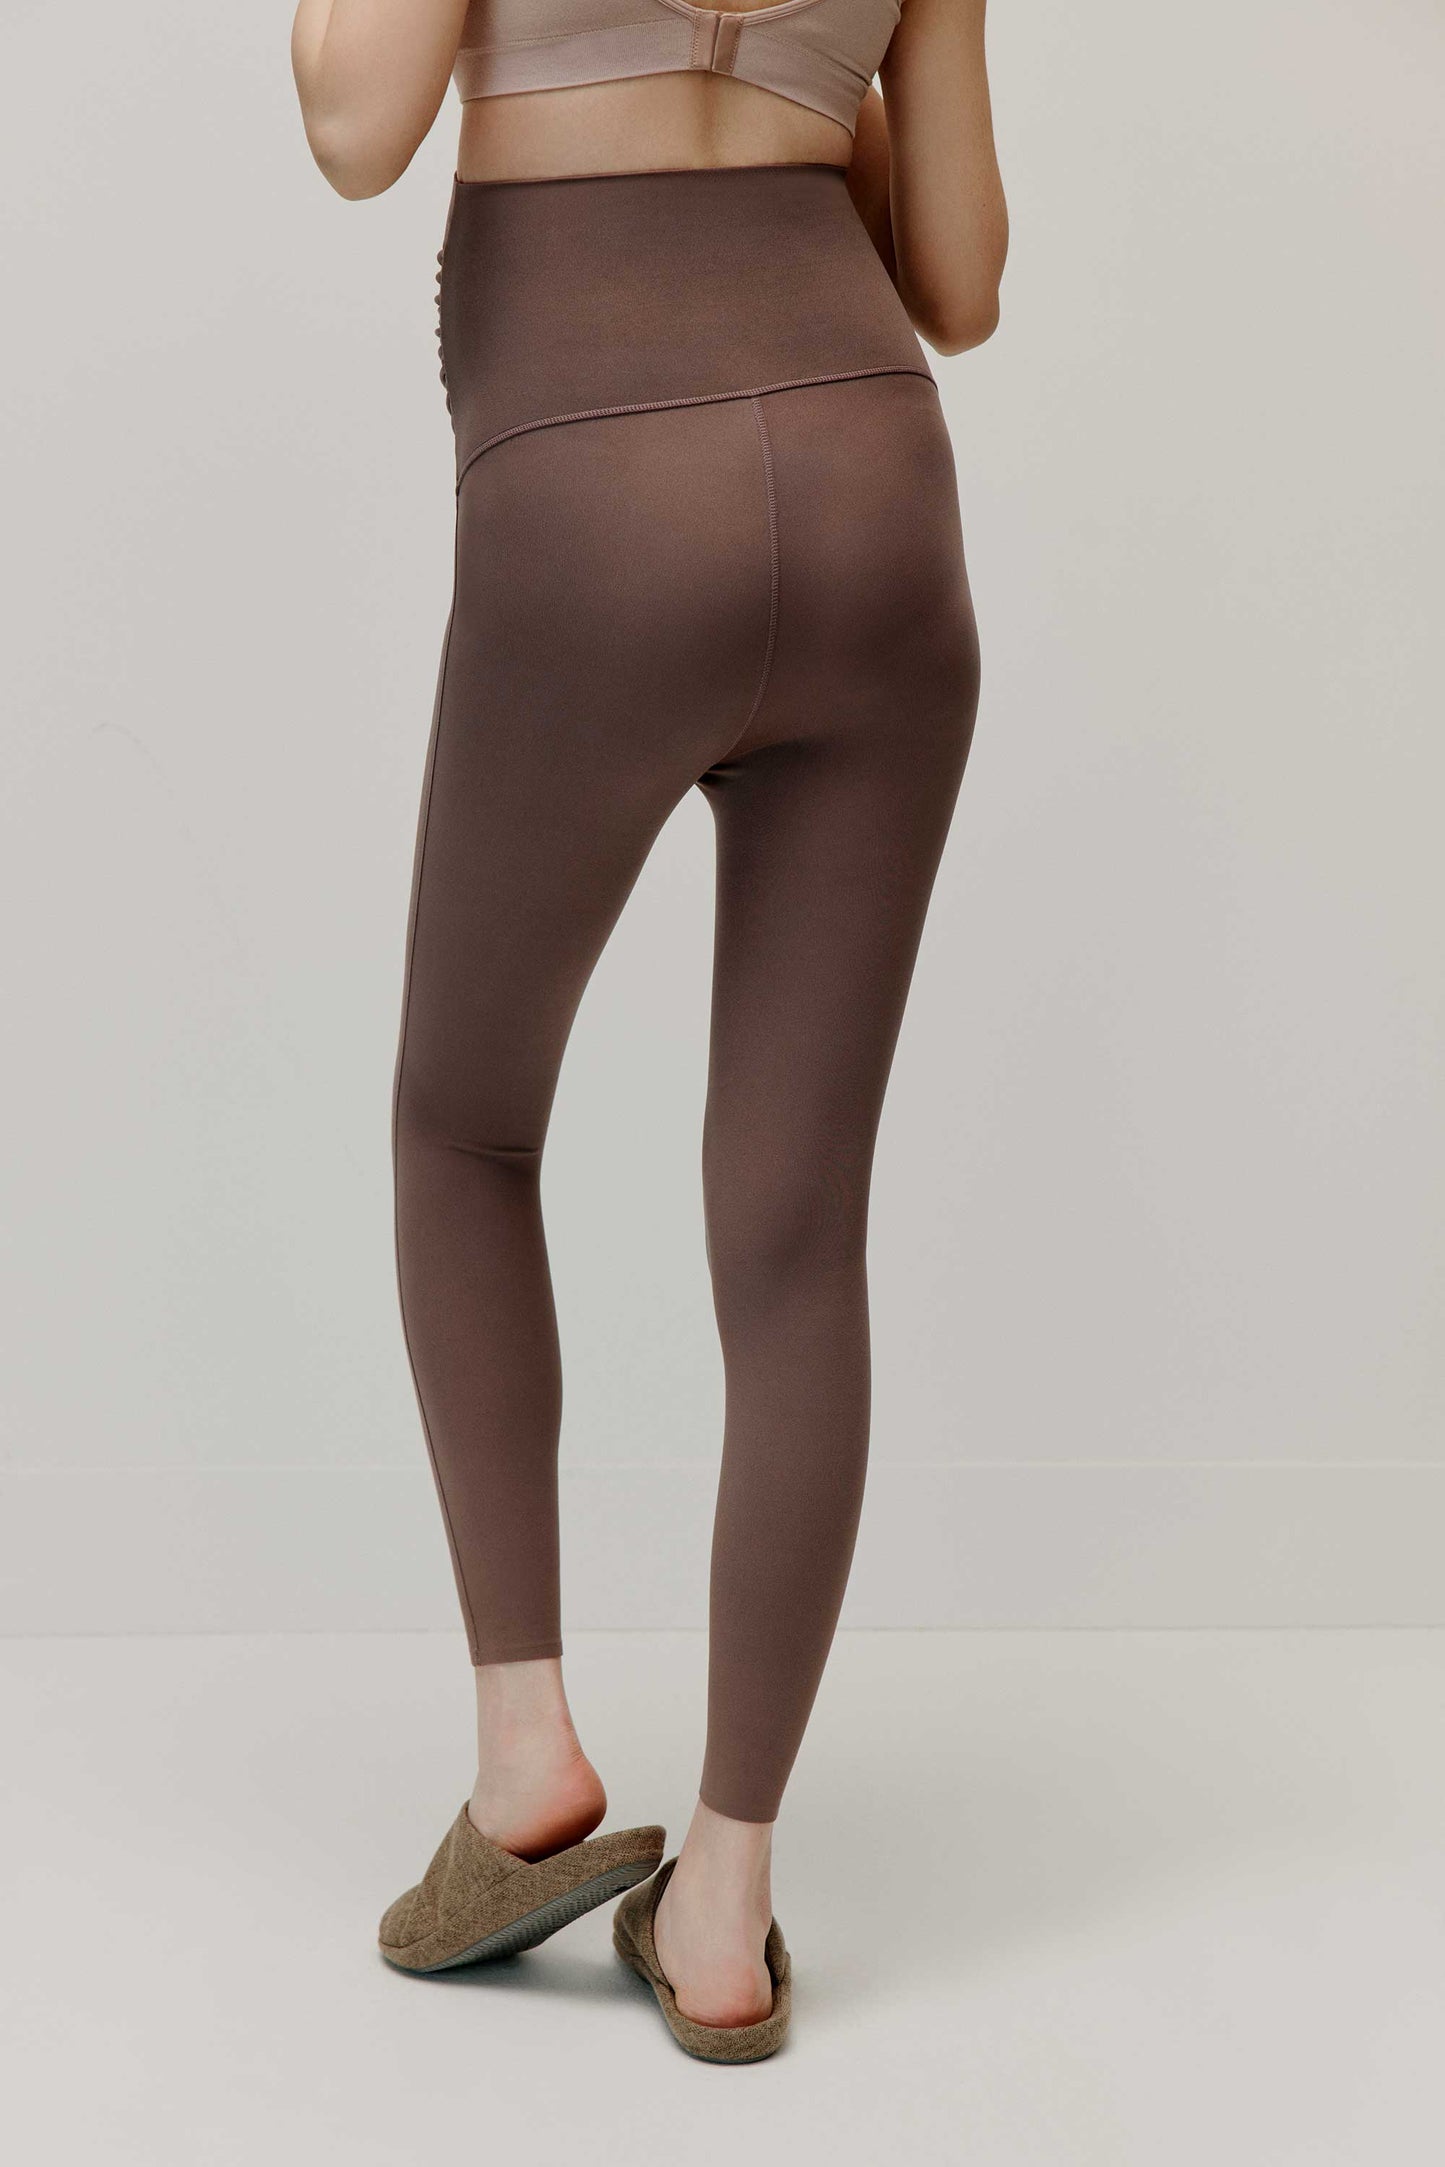 back of woman in brown leggings